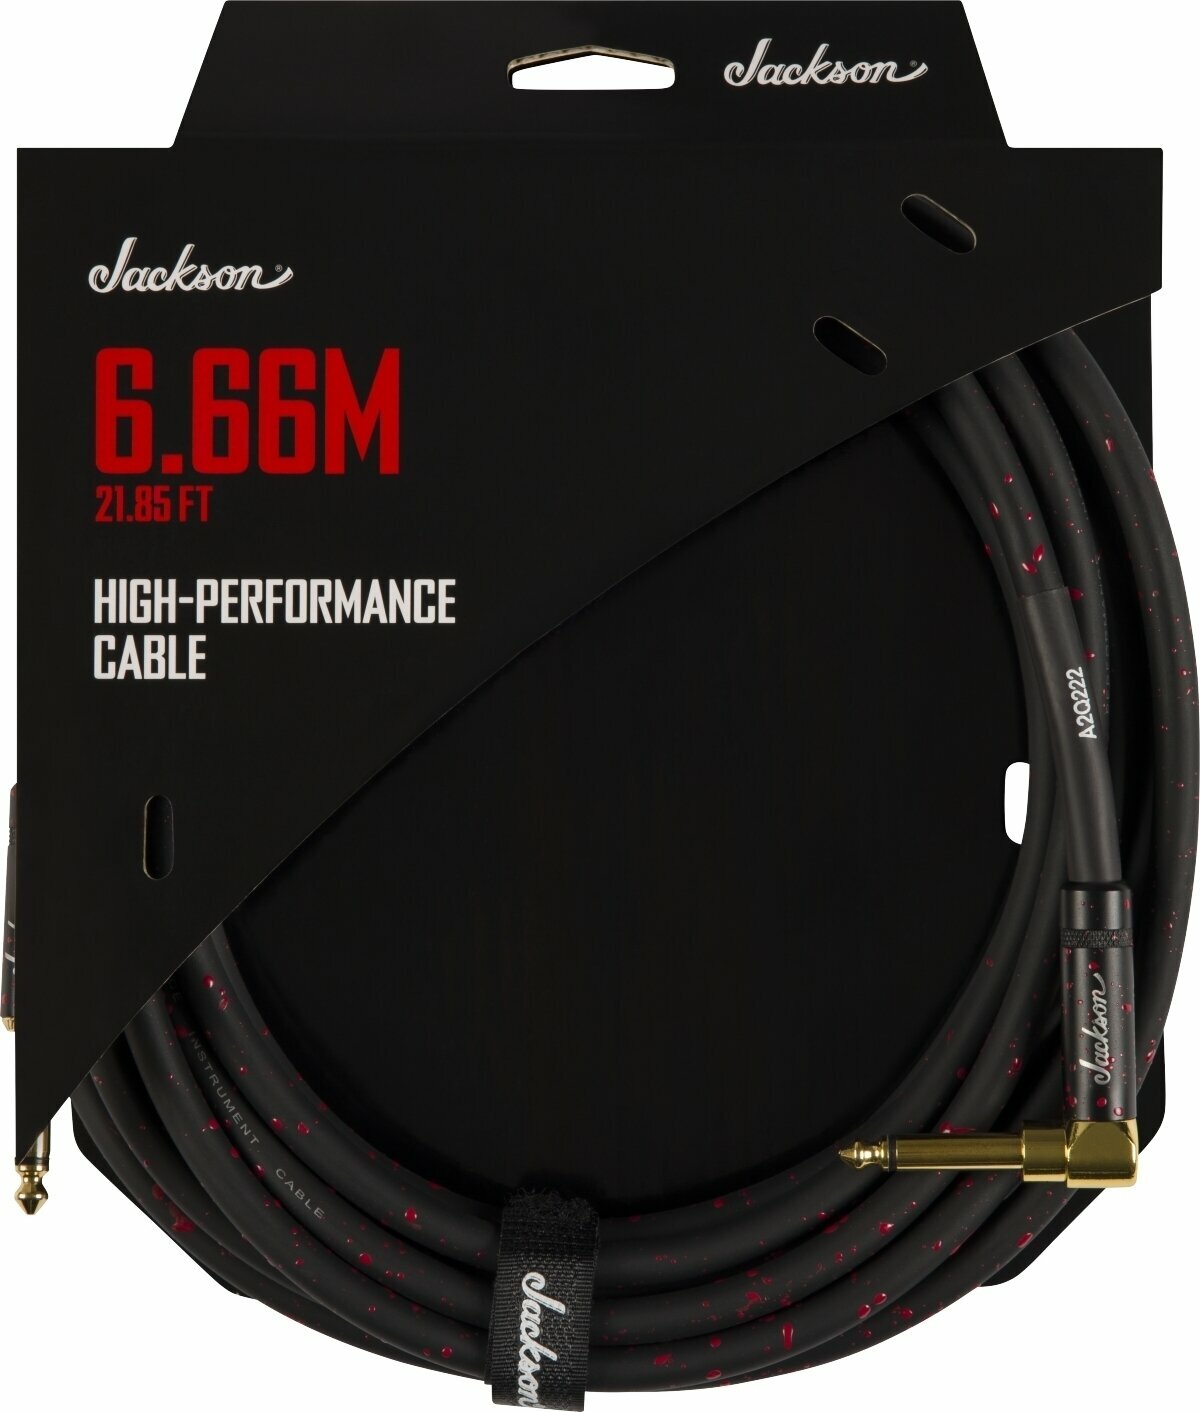 Kabel instrumentalny Jackson High Performance Cable Czarny-Czerwony 6,66 m Prosty - Kątowy